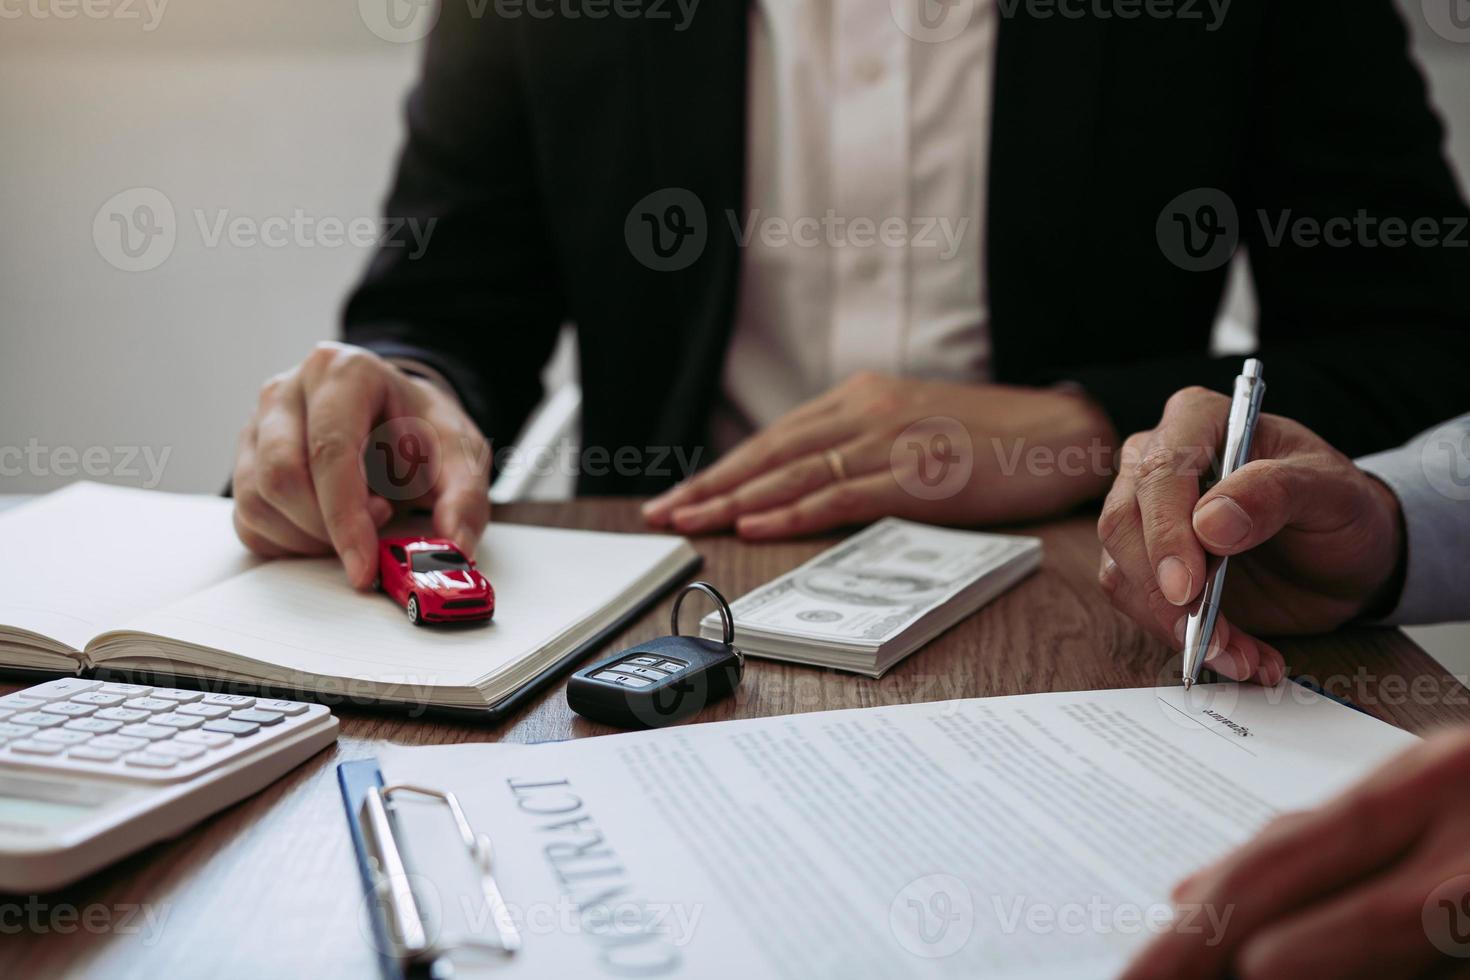 O vendedor de carros do agente entregou o carro modelo de brinquedo ao comprador do carro novo enquanto assinava o contrato. foto